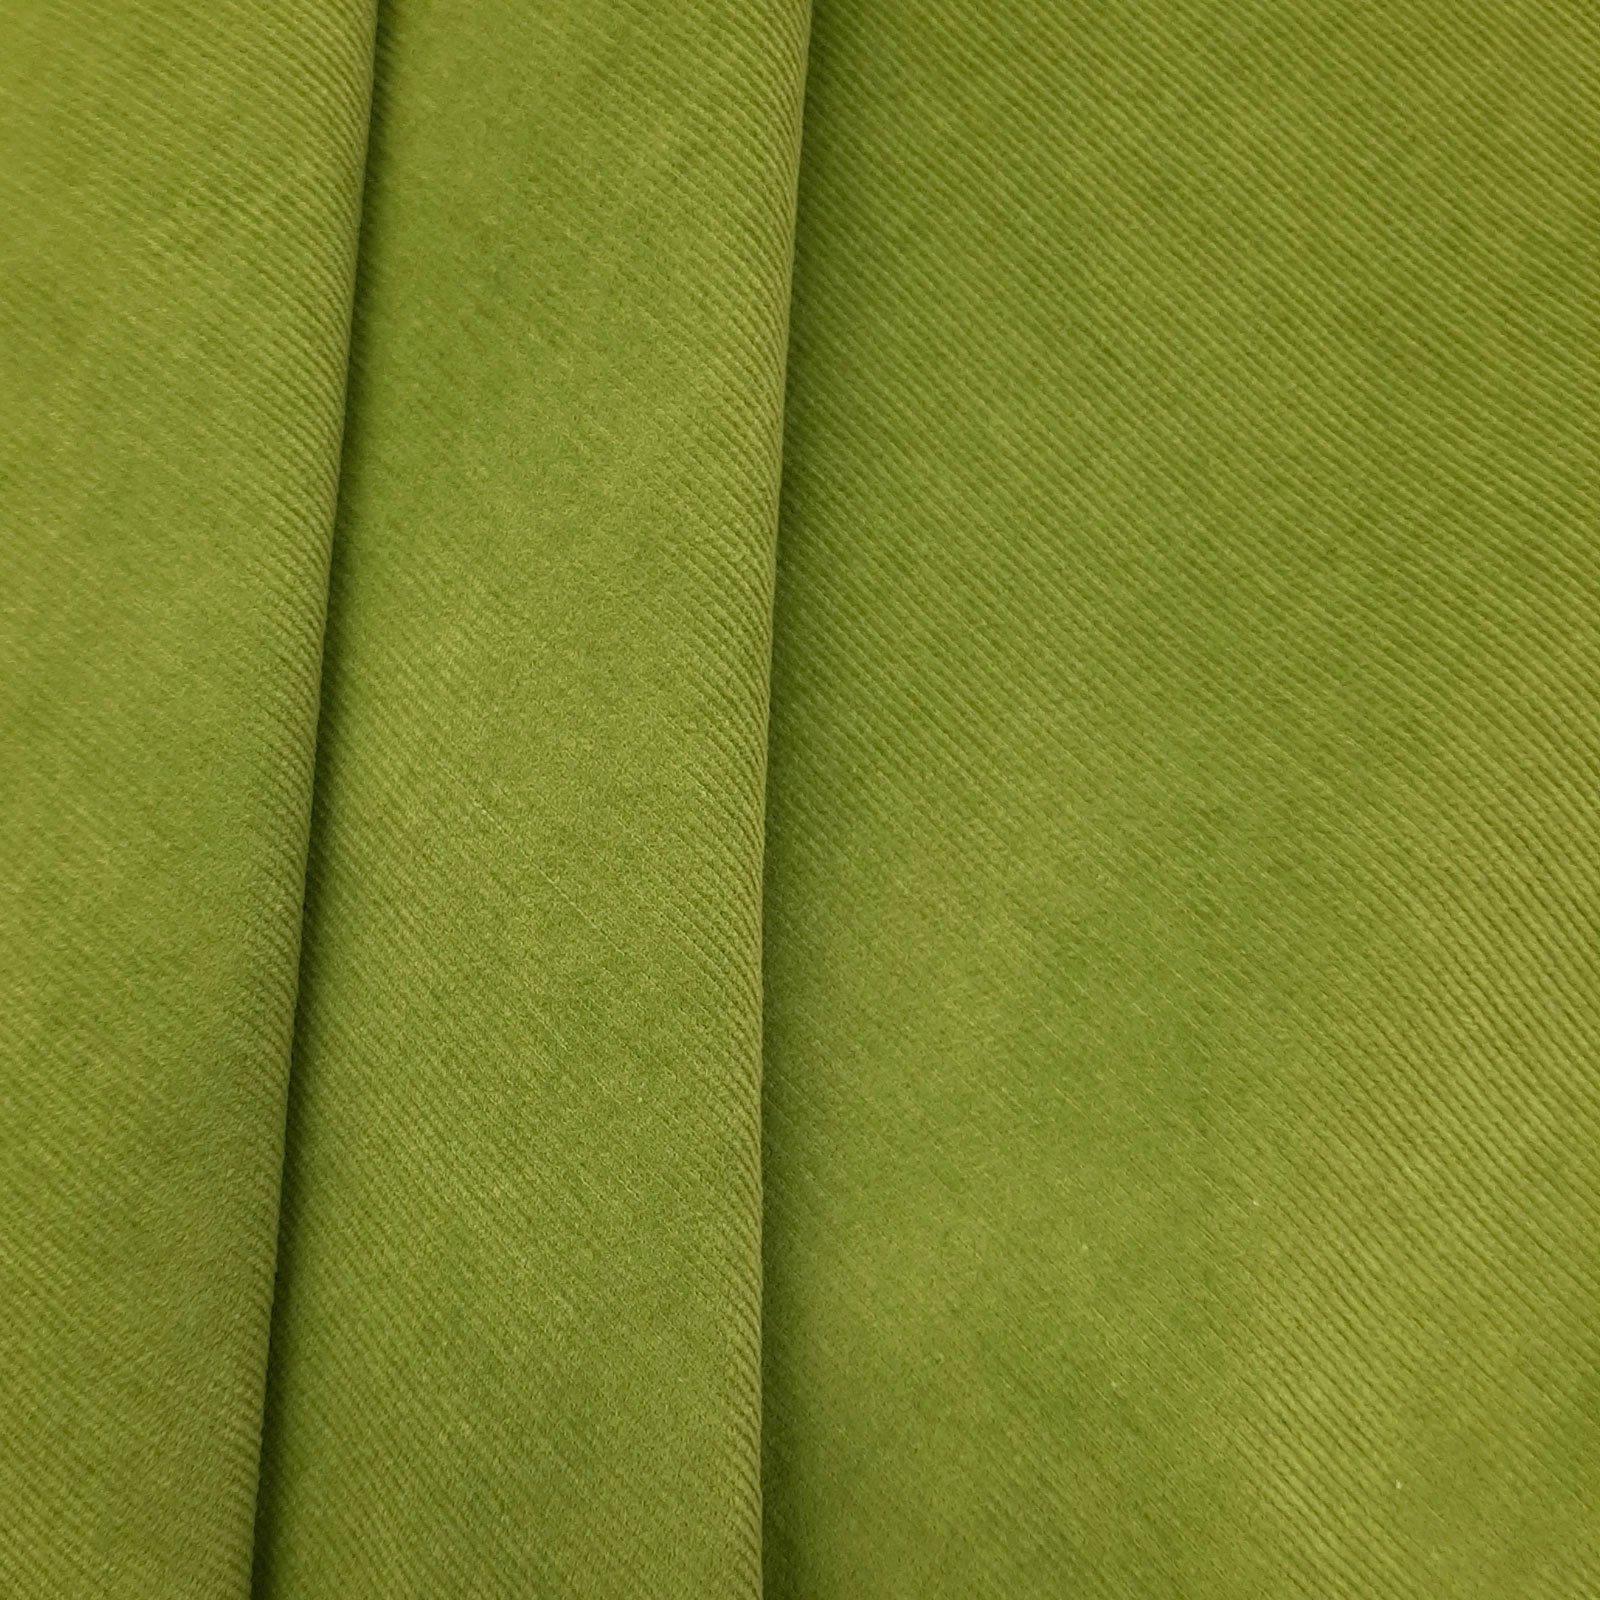 Pincord - Naturlig grønn